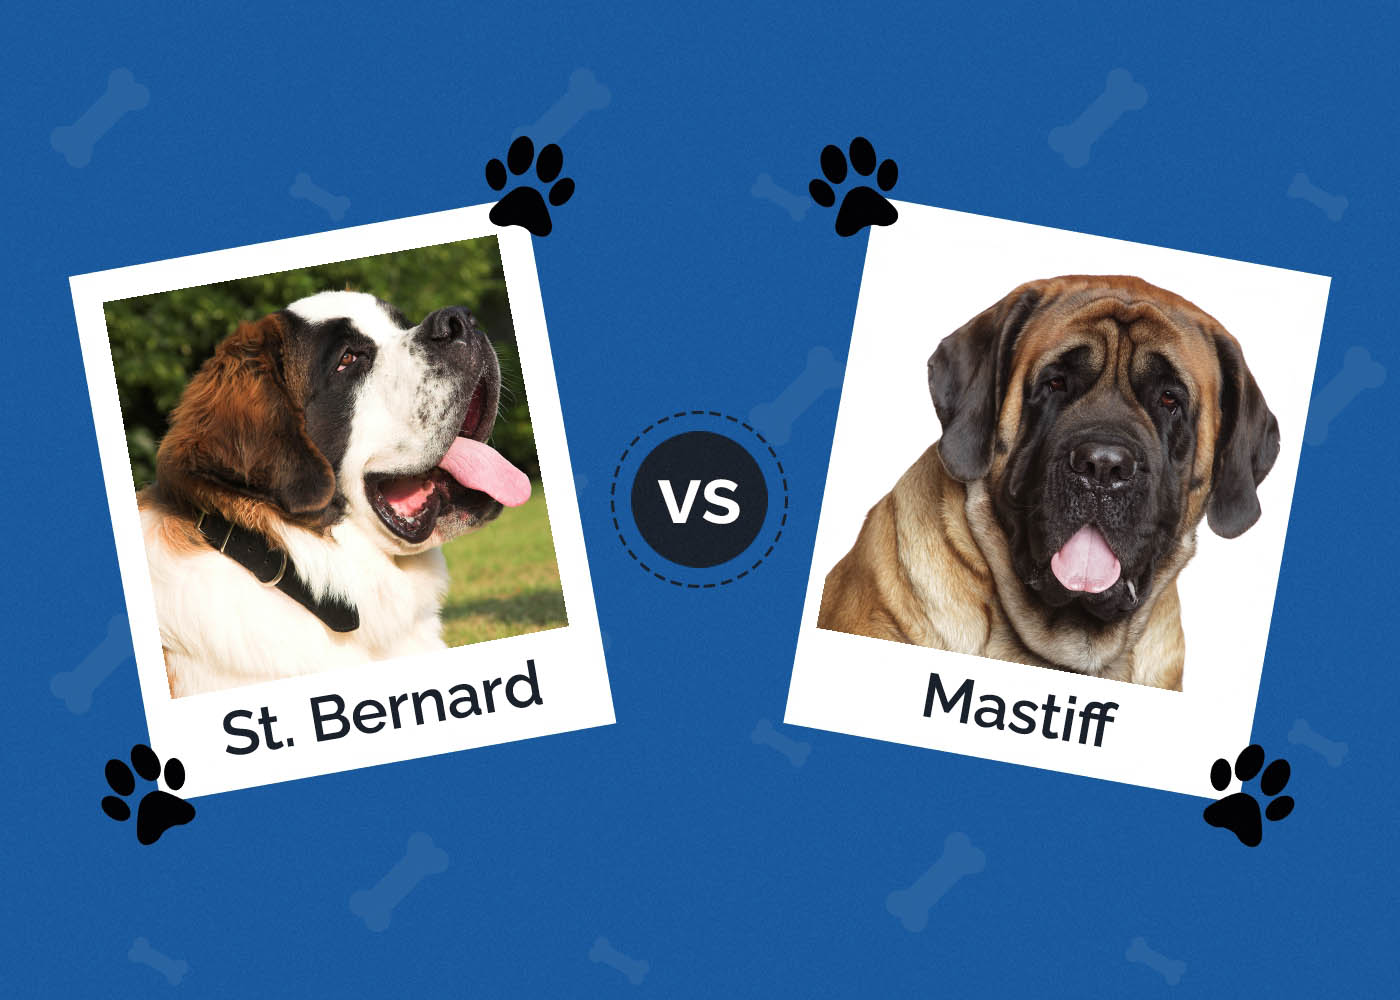 St Bernard vs Mastiff